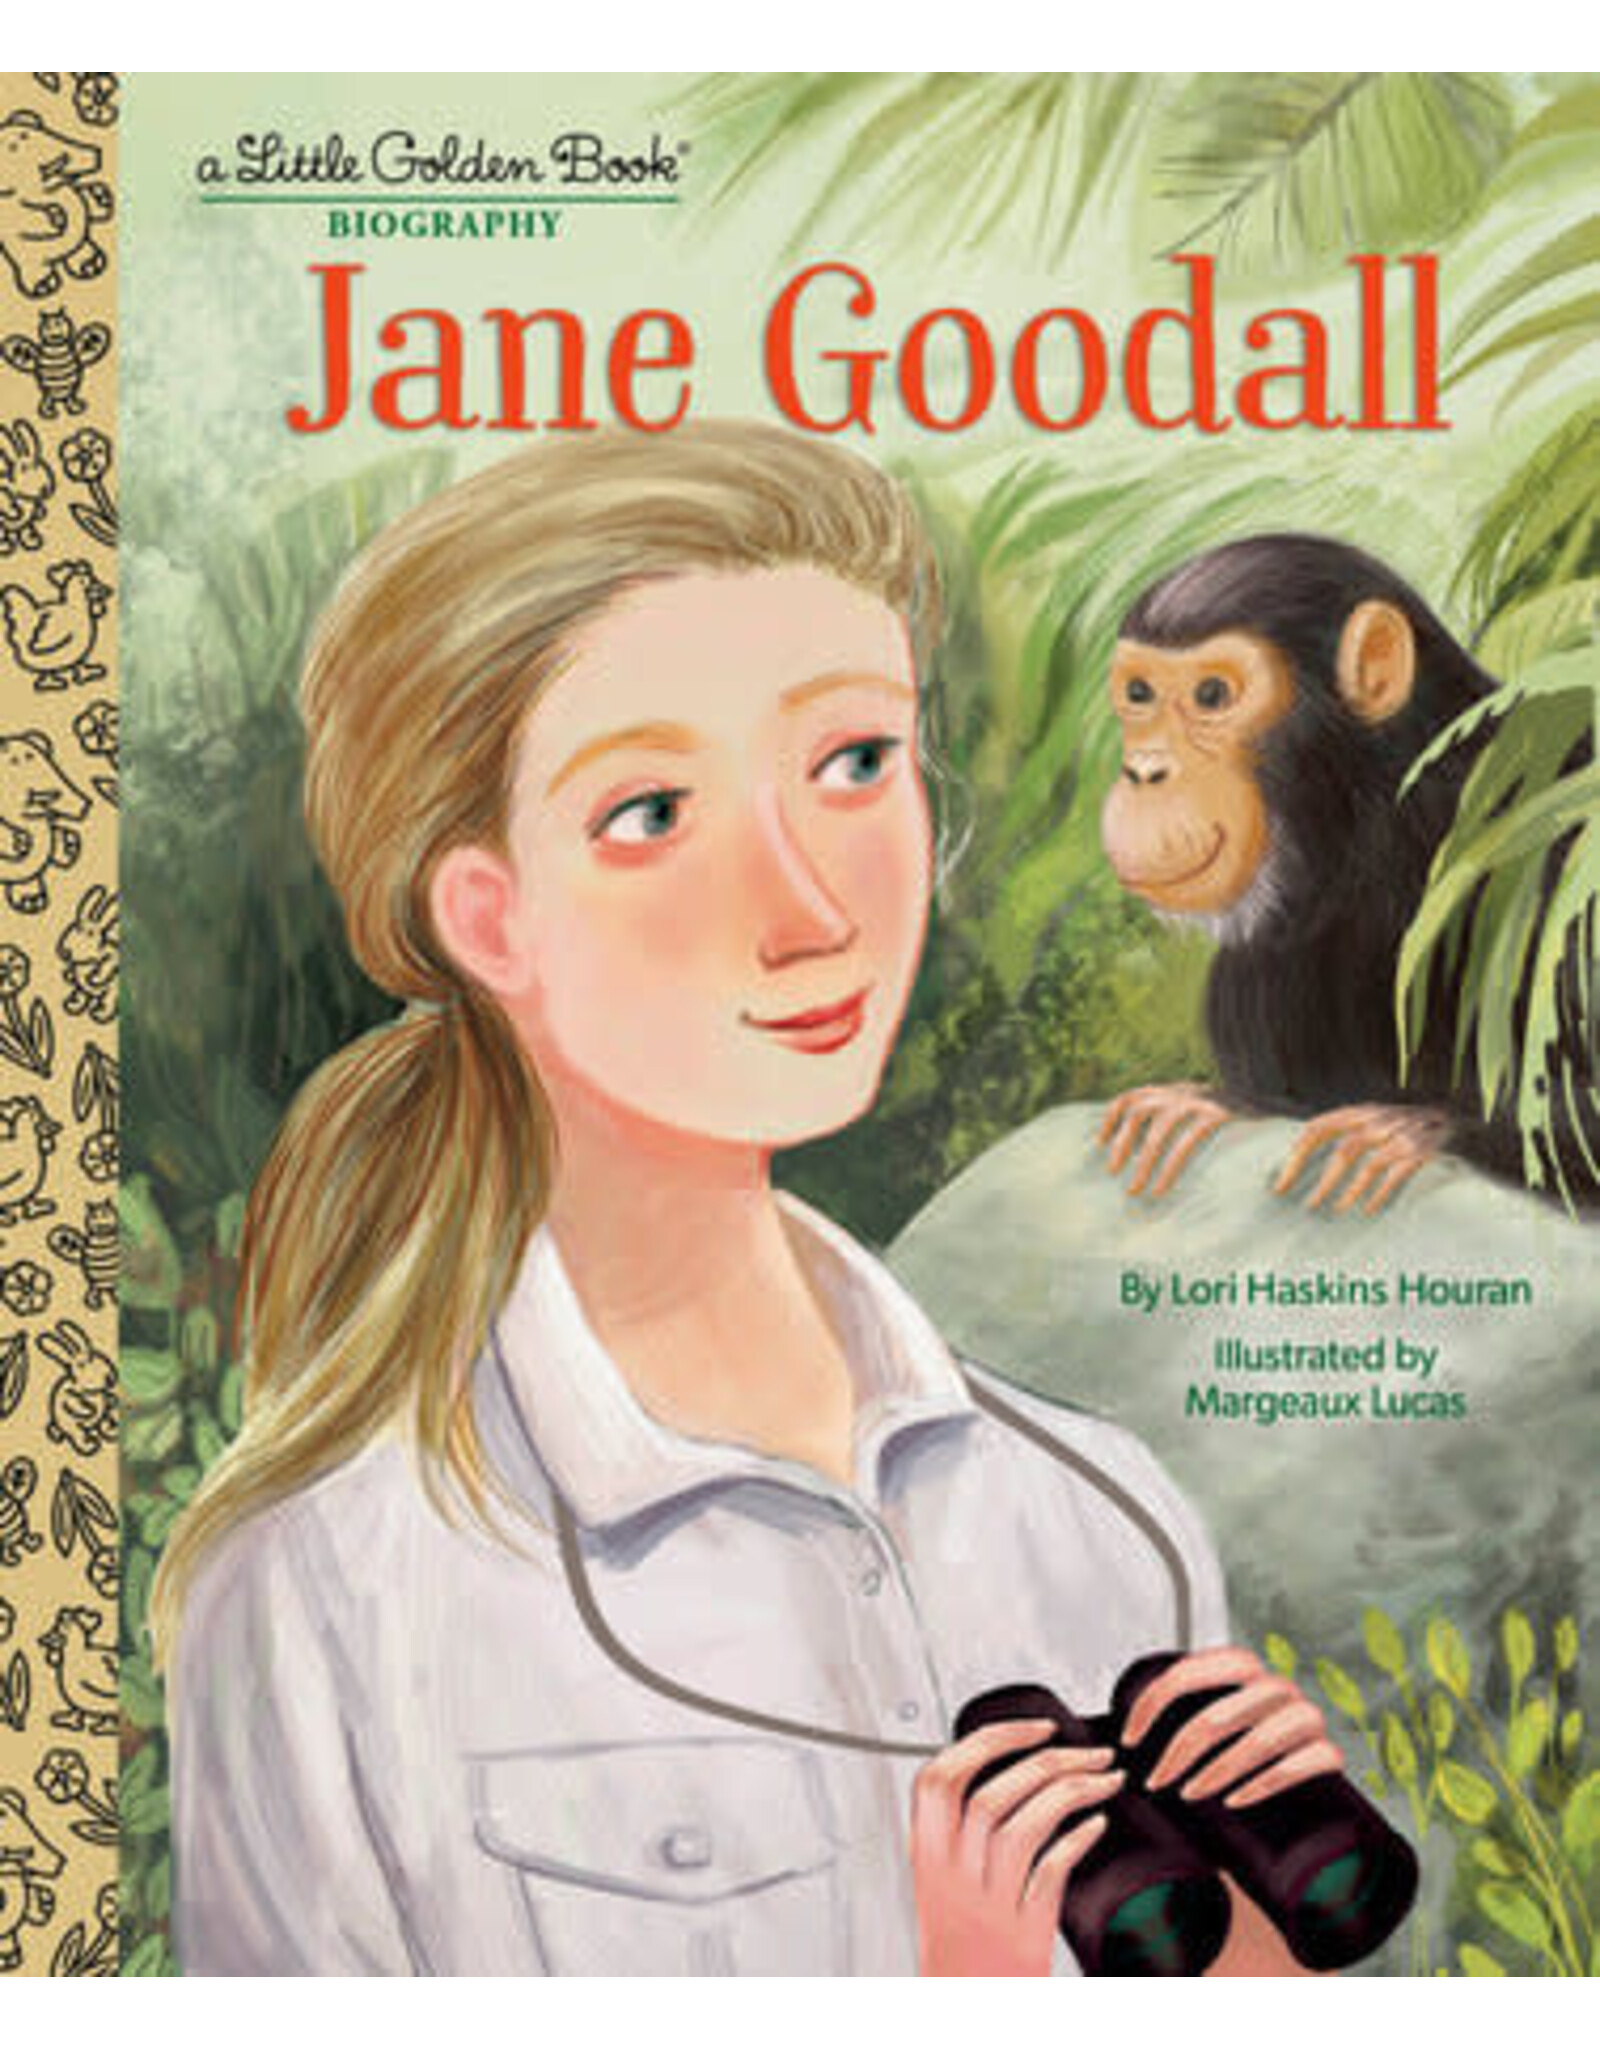 Little Golden Books Jane Goodall: A Little Golden Book Biography